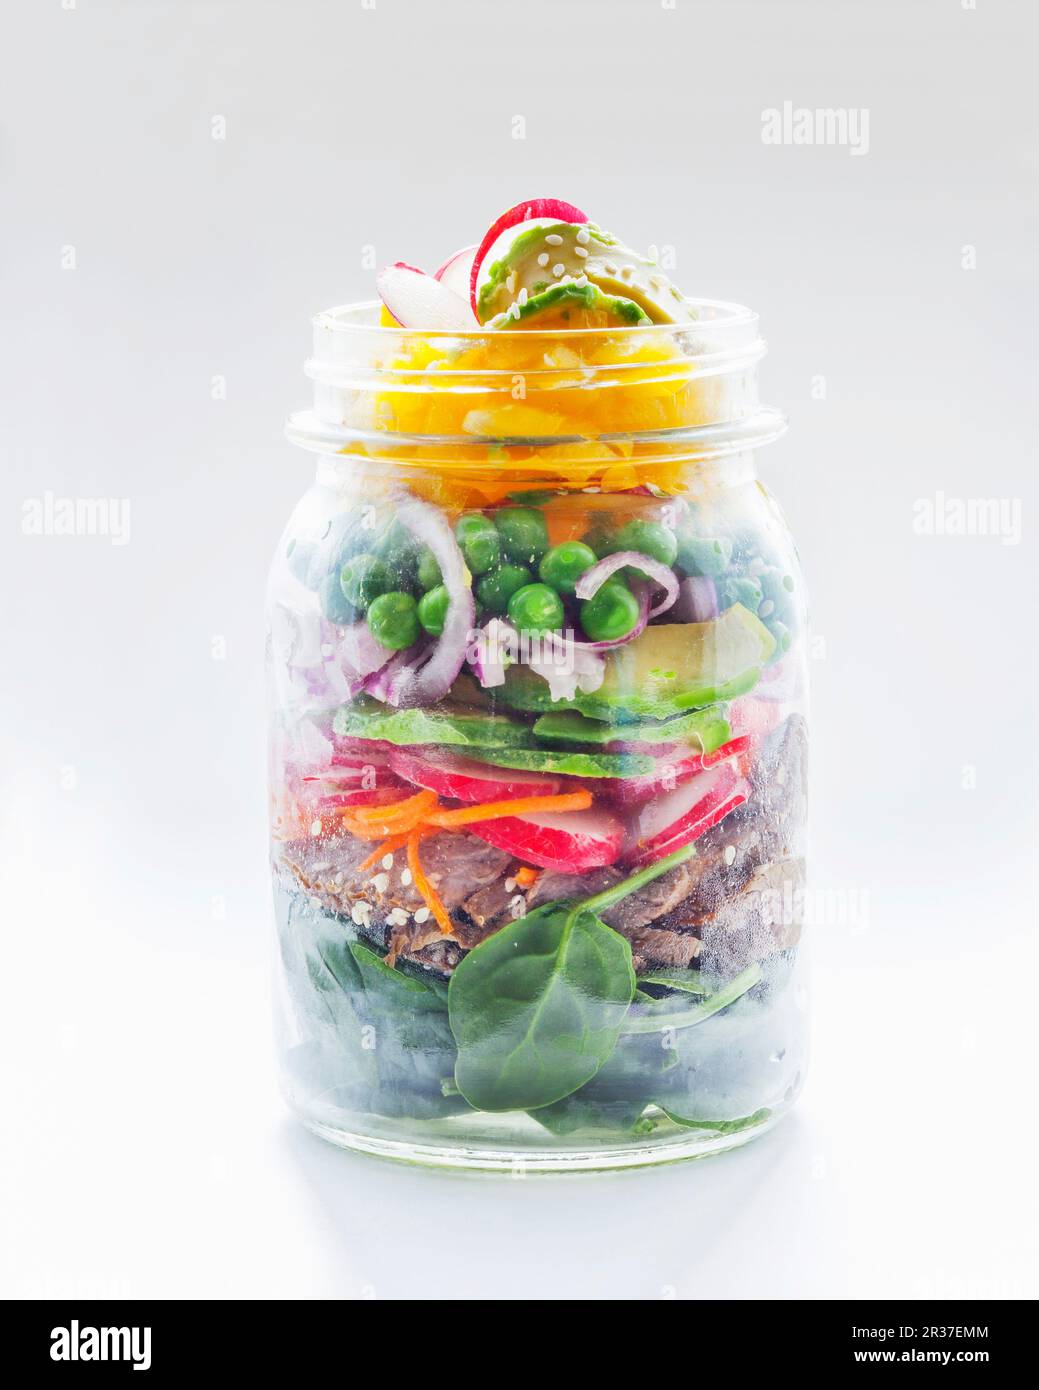 Gemüsesalat mit Erbsen, Avocado, Radieschen, Brot und Spinat in einem Glasgefäß Stockfoto